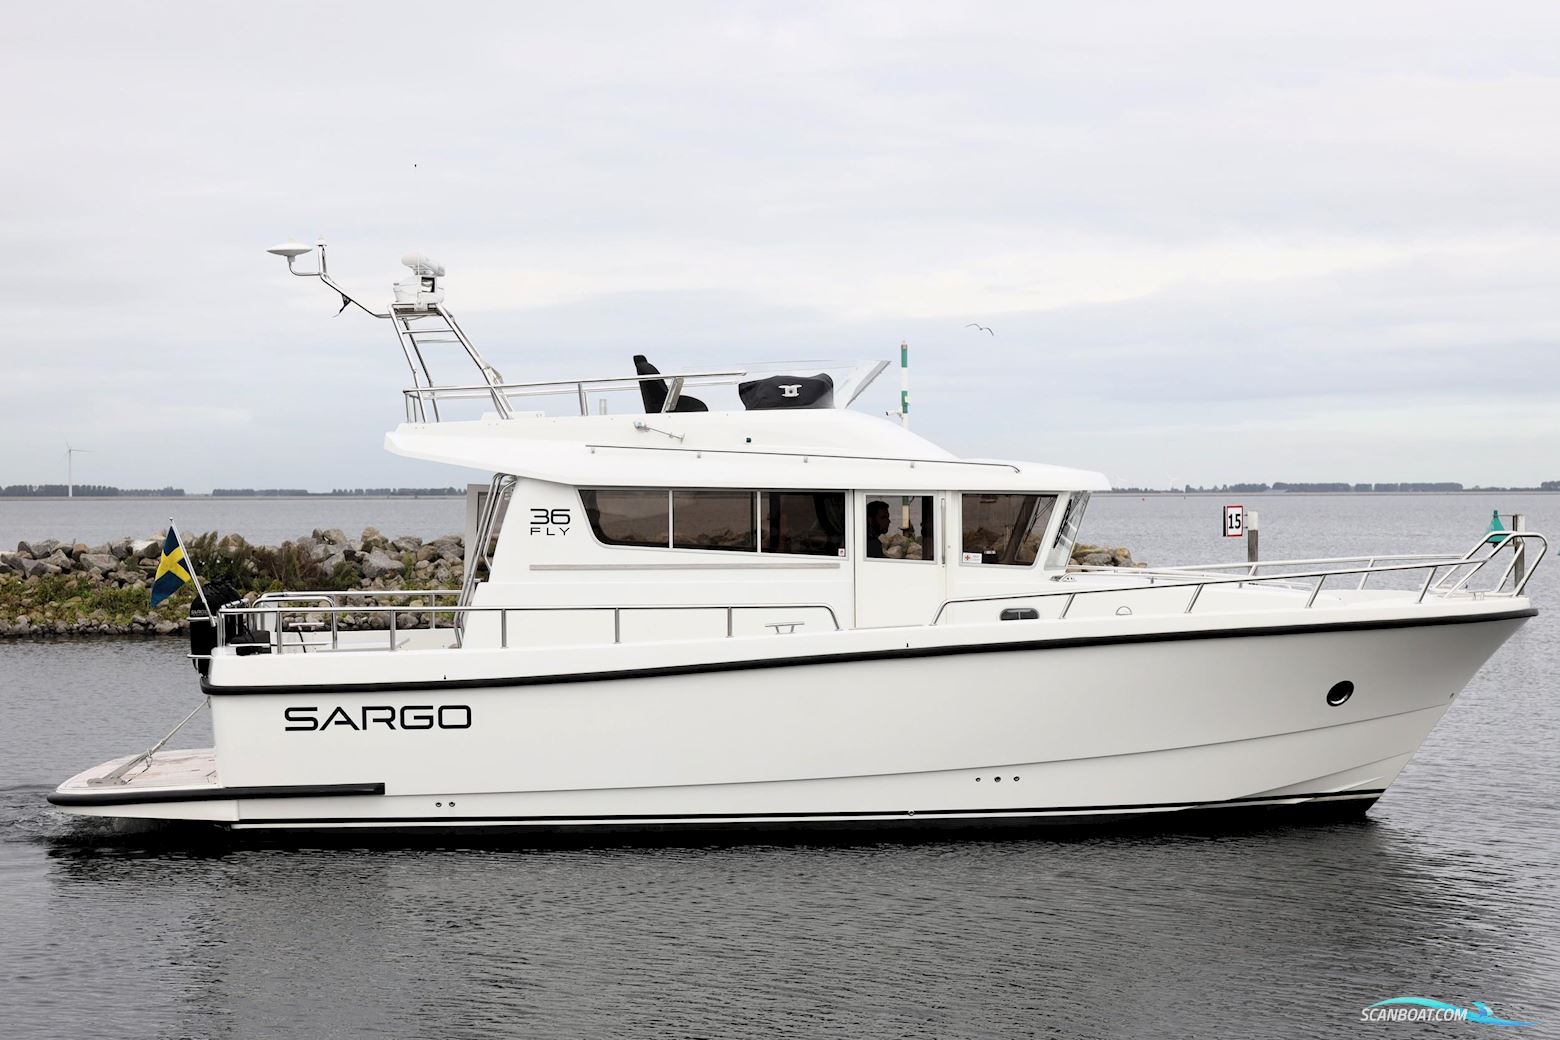 Sargo 36 Fly Motorbåd 2013, med Volvo Penta motor, Holland